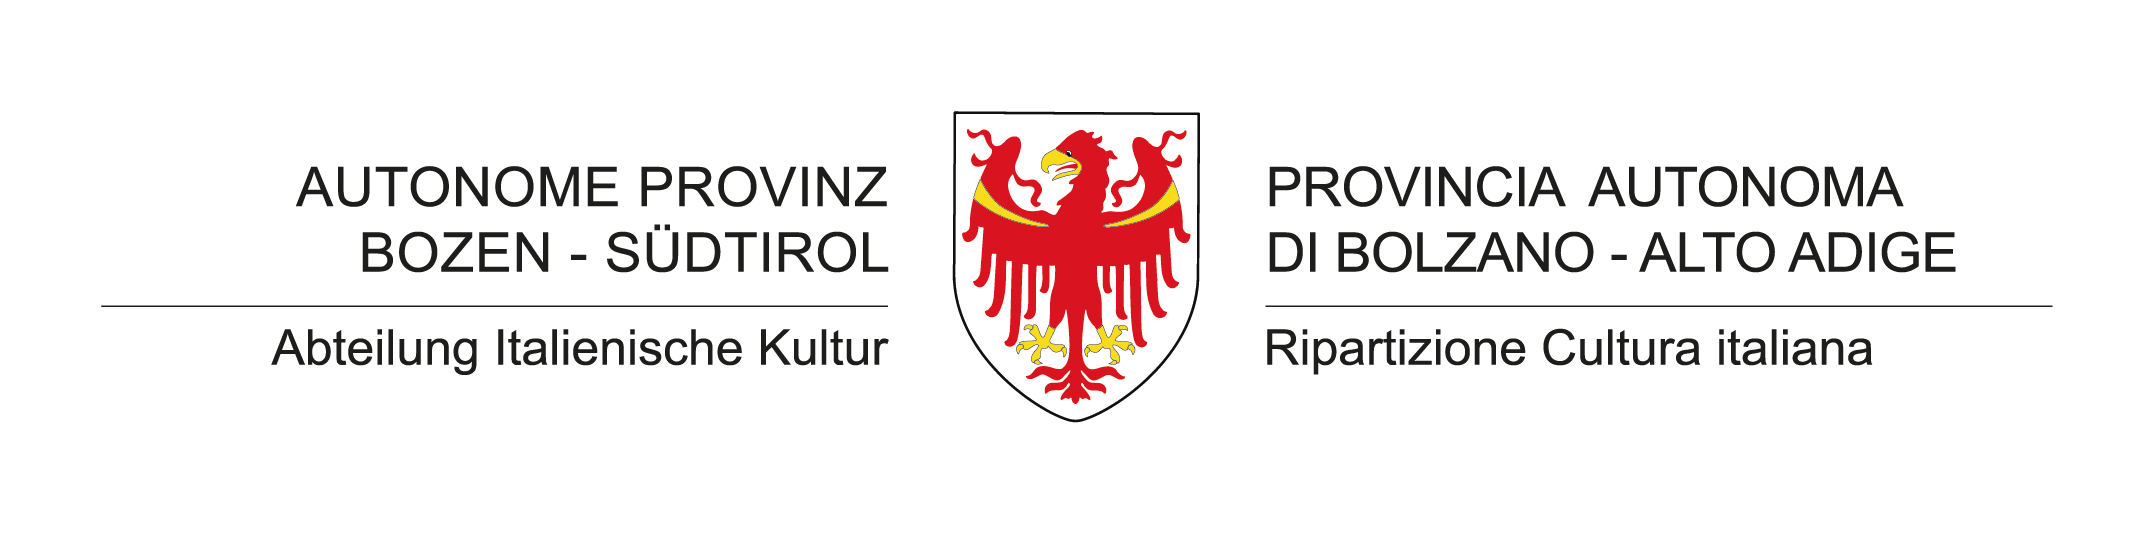 Logo Provincia autonoma di Bolzano - Alto Adige